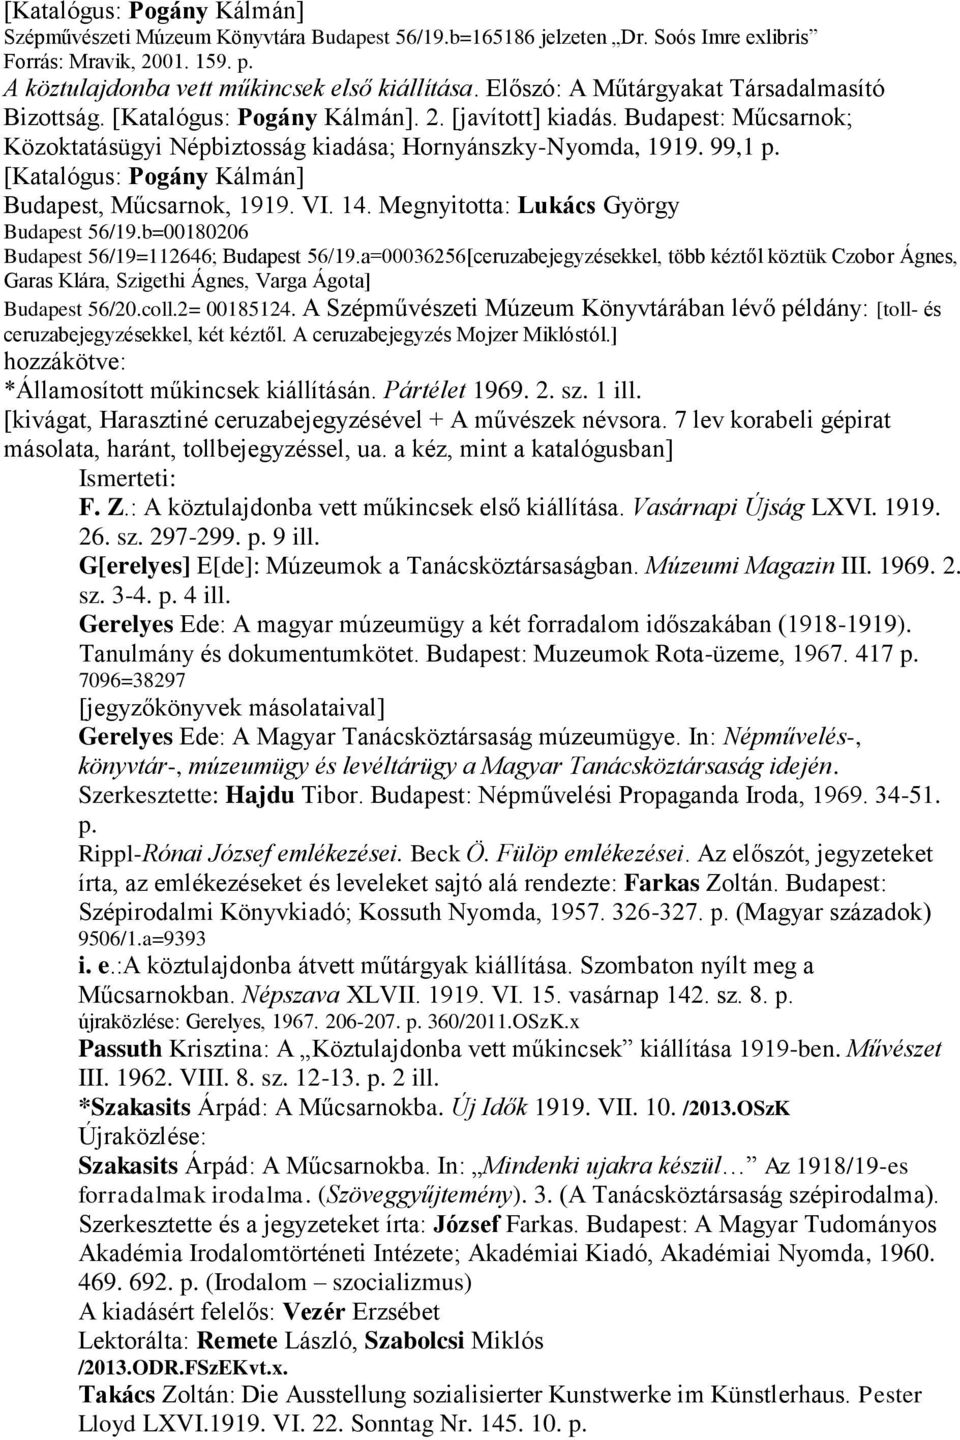 [Katalógus: Pogány Kálmán] Budapest, Műcsarnok, 1919. VI. 14. Megnyitotta: Lukács György Budapest 56/19.b=00180206 Budapest 56/19=112646; Budapest 56/19.